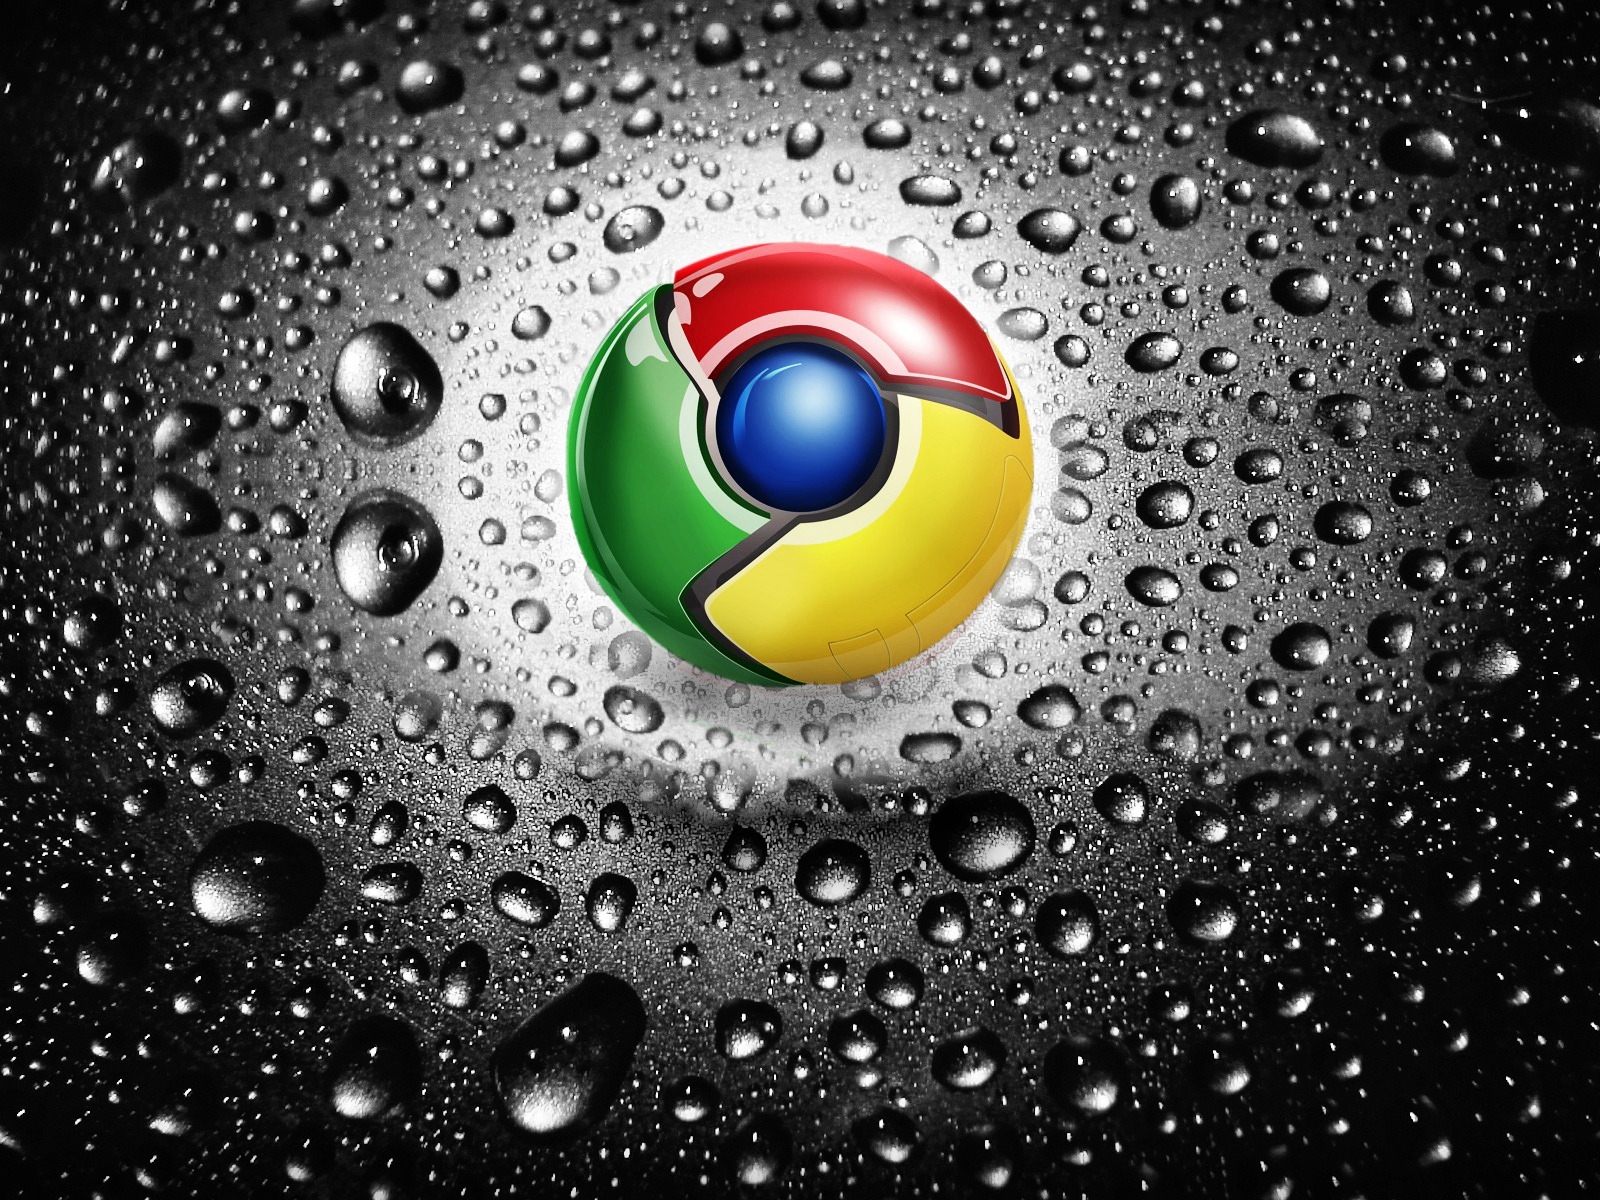 Google Chrome for 1600 x 1200 resolution